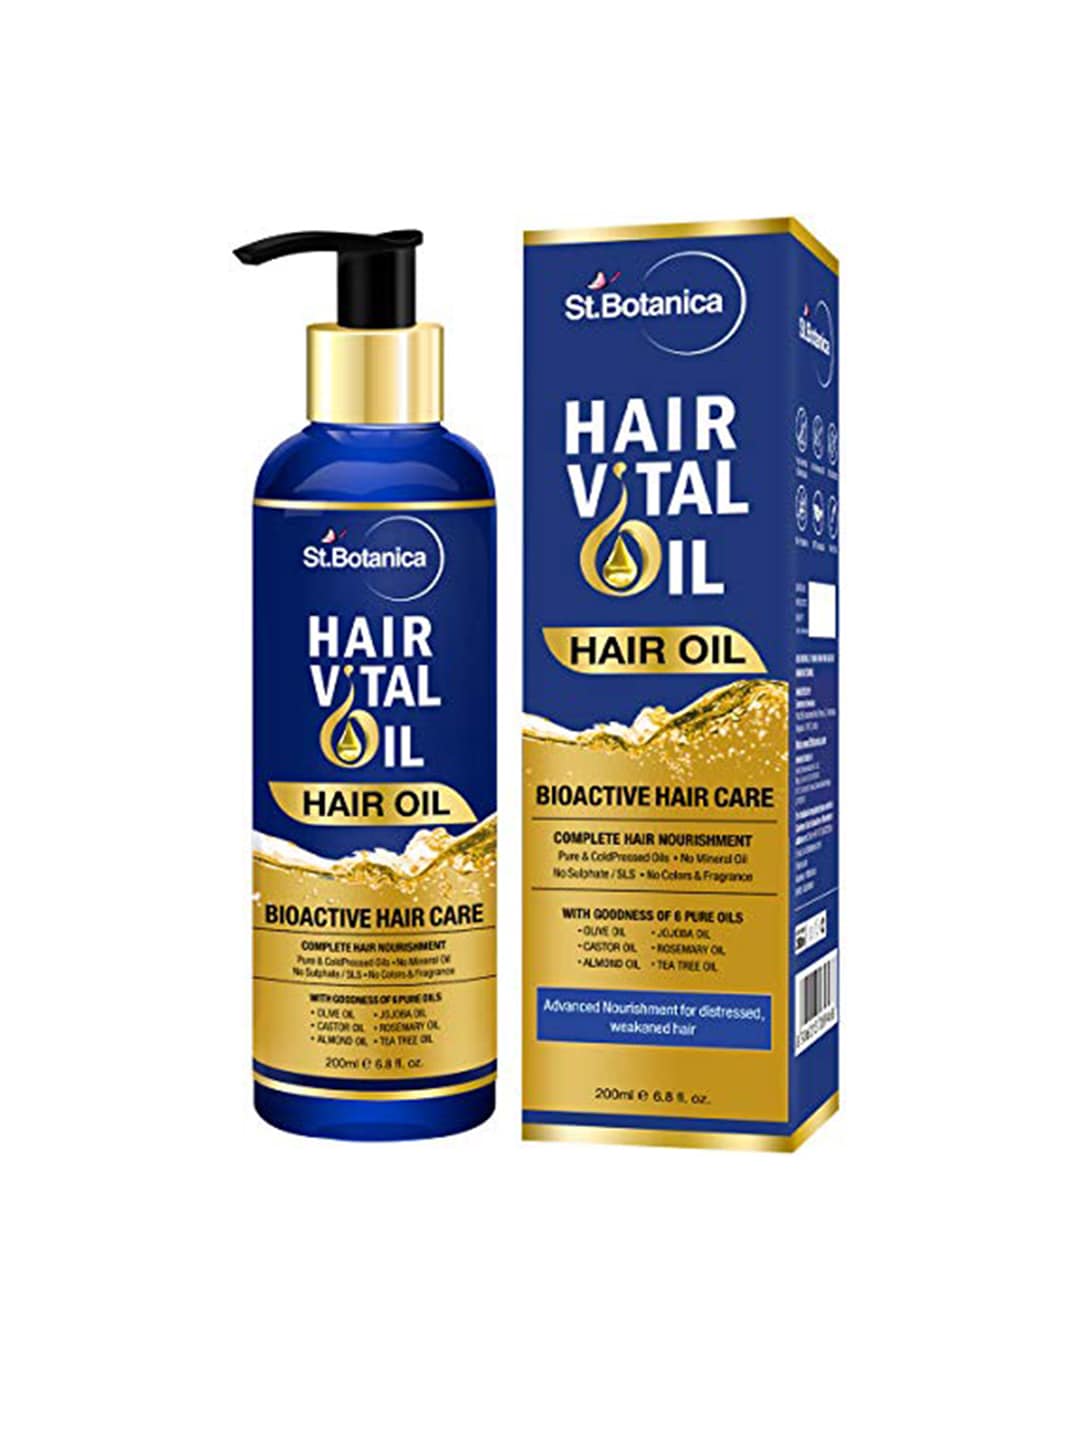 St.Botanica Hair Vital Oil 200ml Price in India